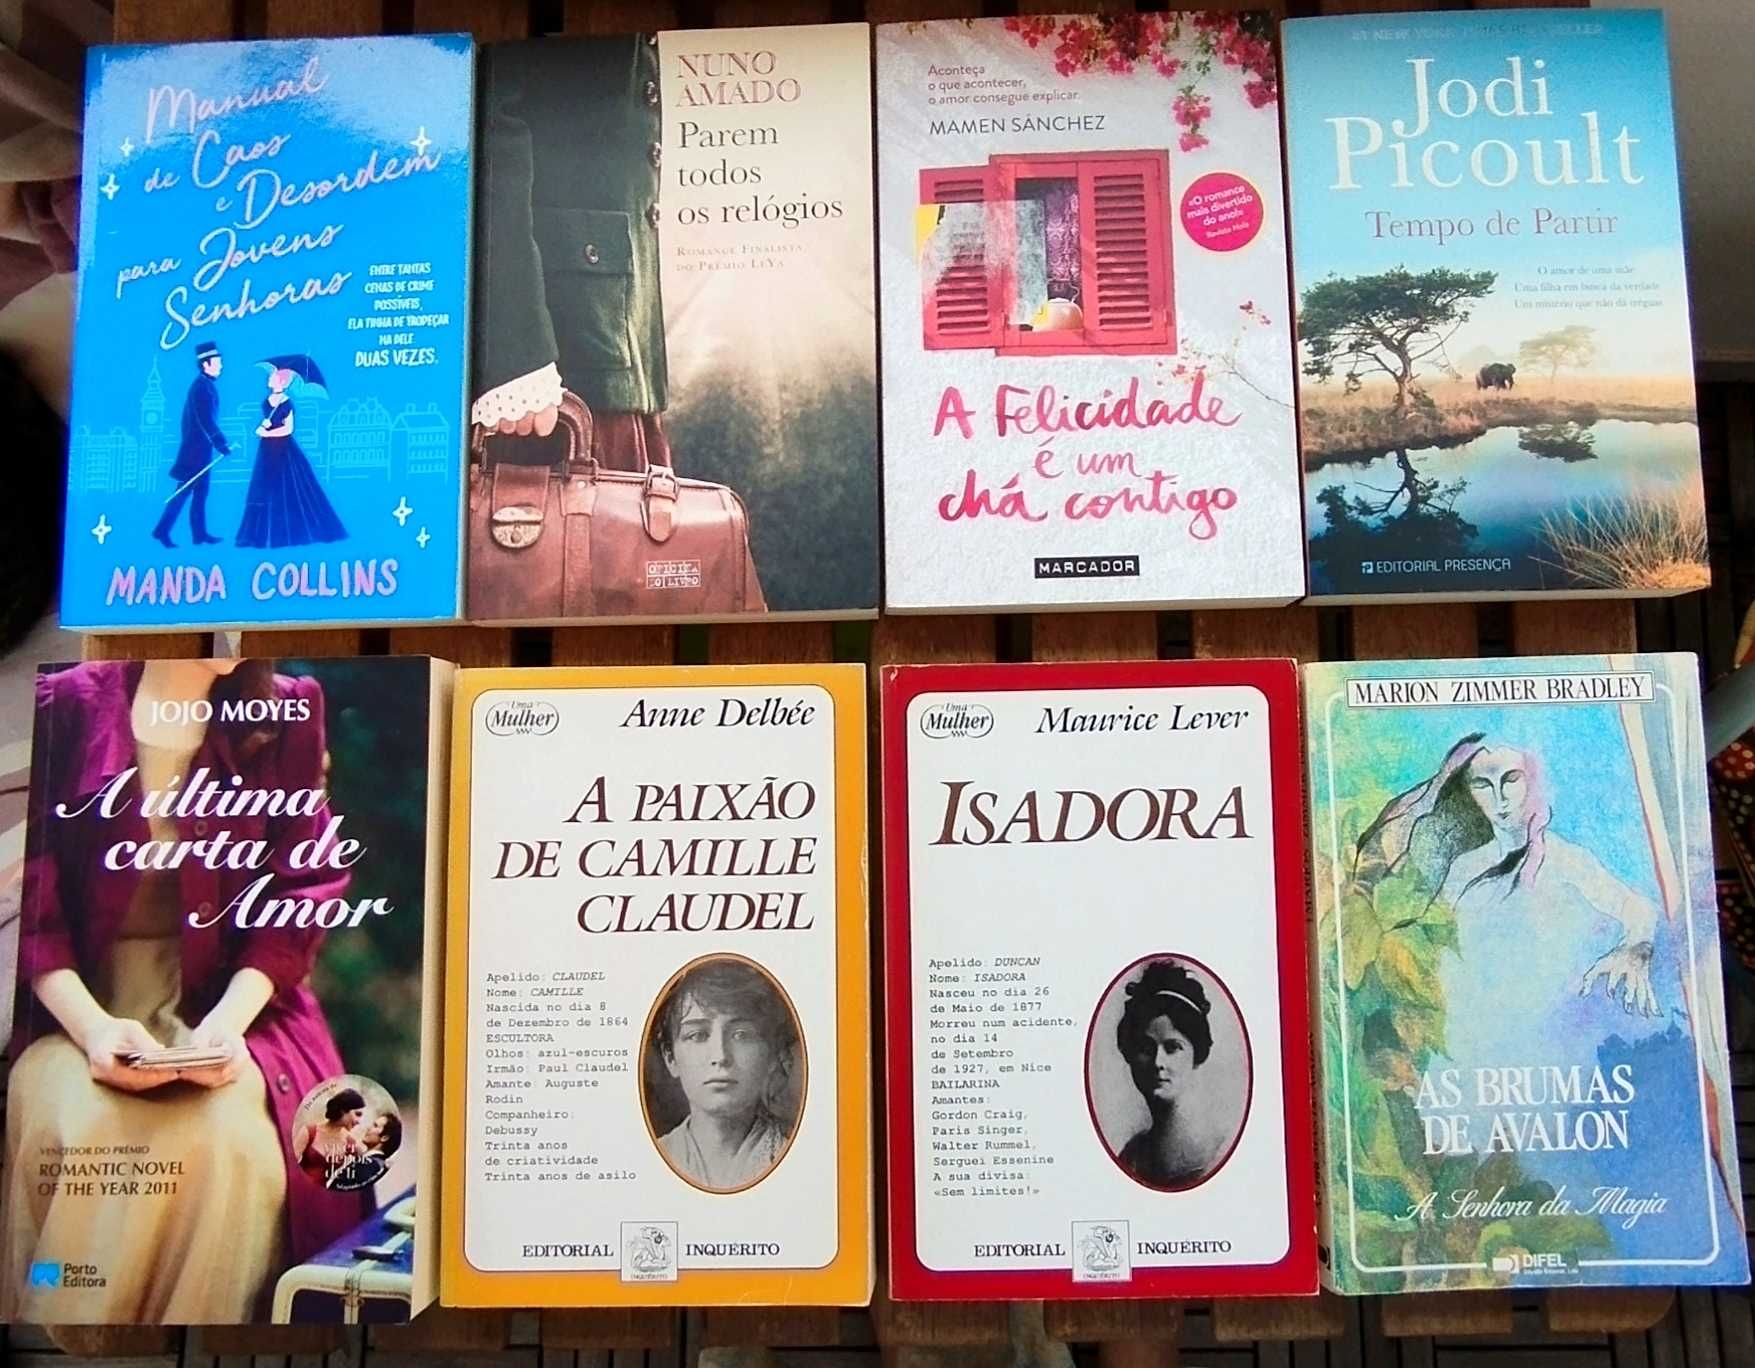 Livro Romance – A Felicidade é um chá contigo de MAMEN SÁNCHEZ